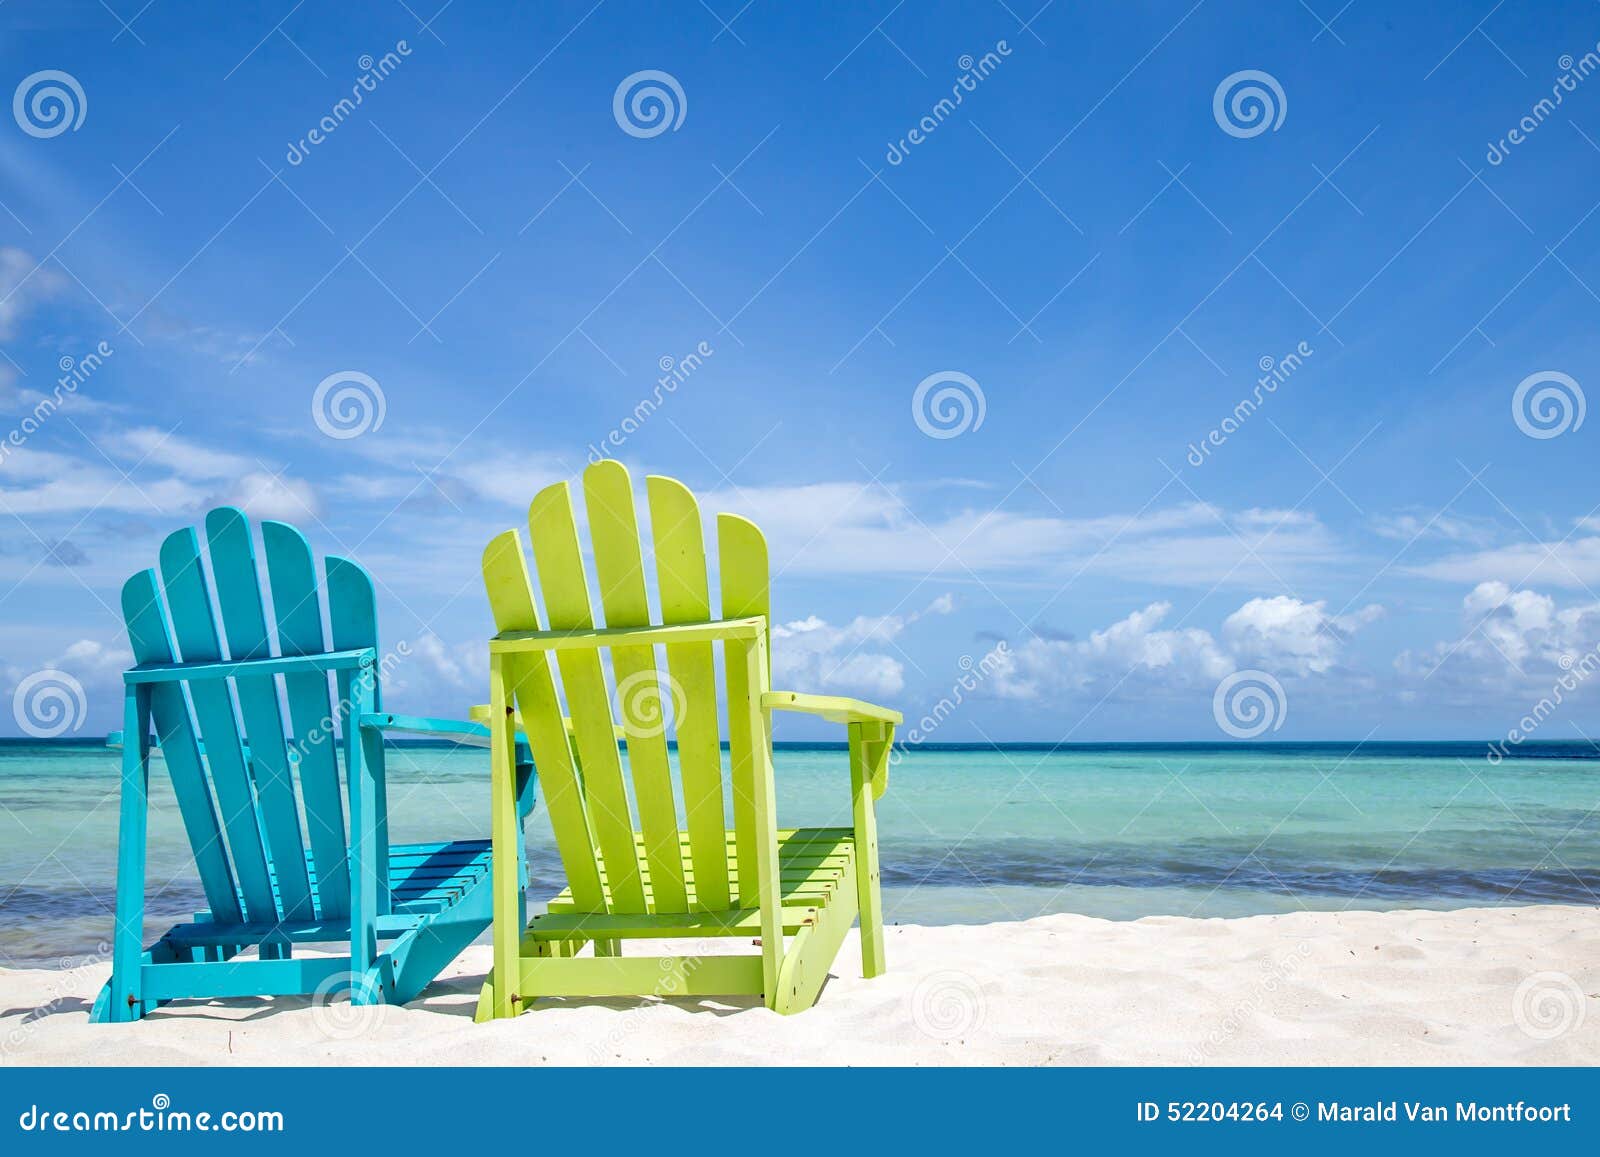 caribbean beach chairs